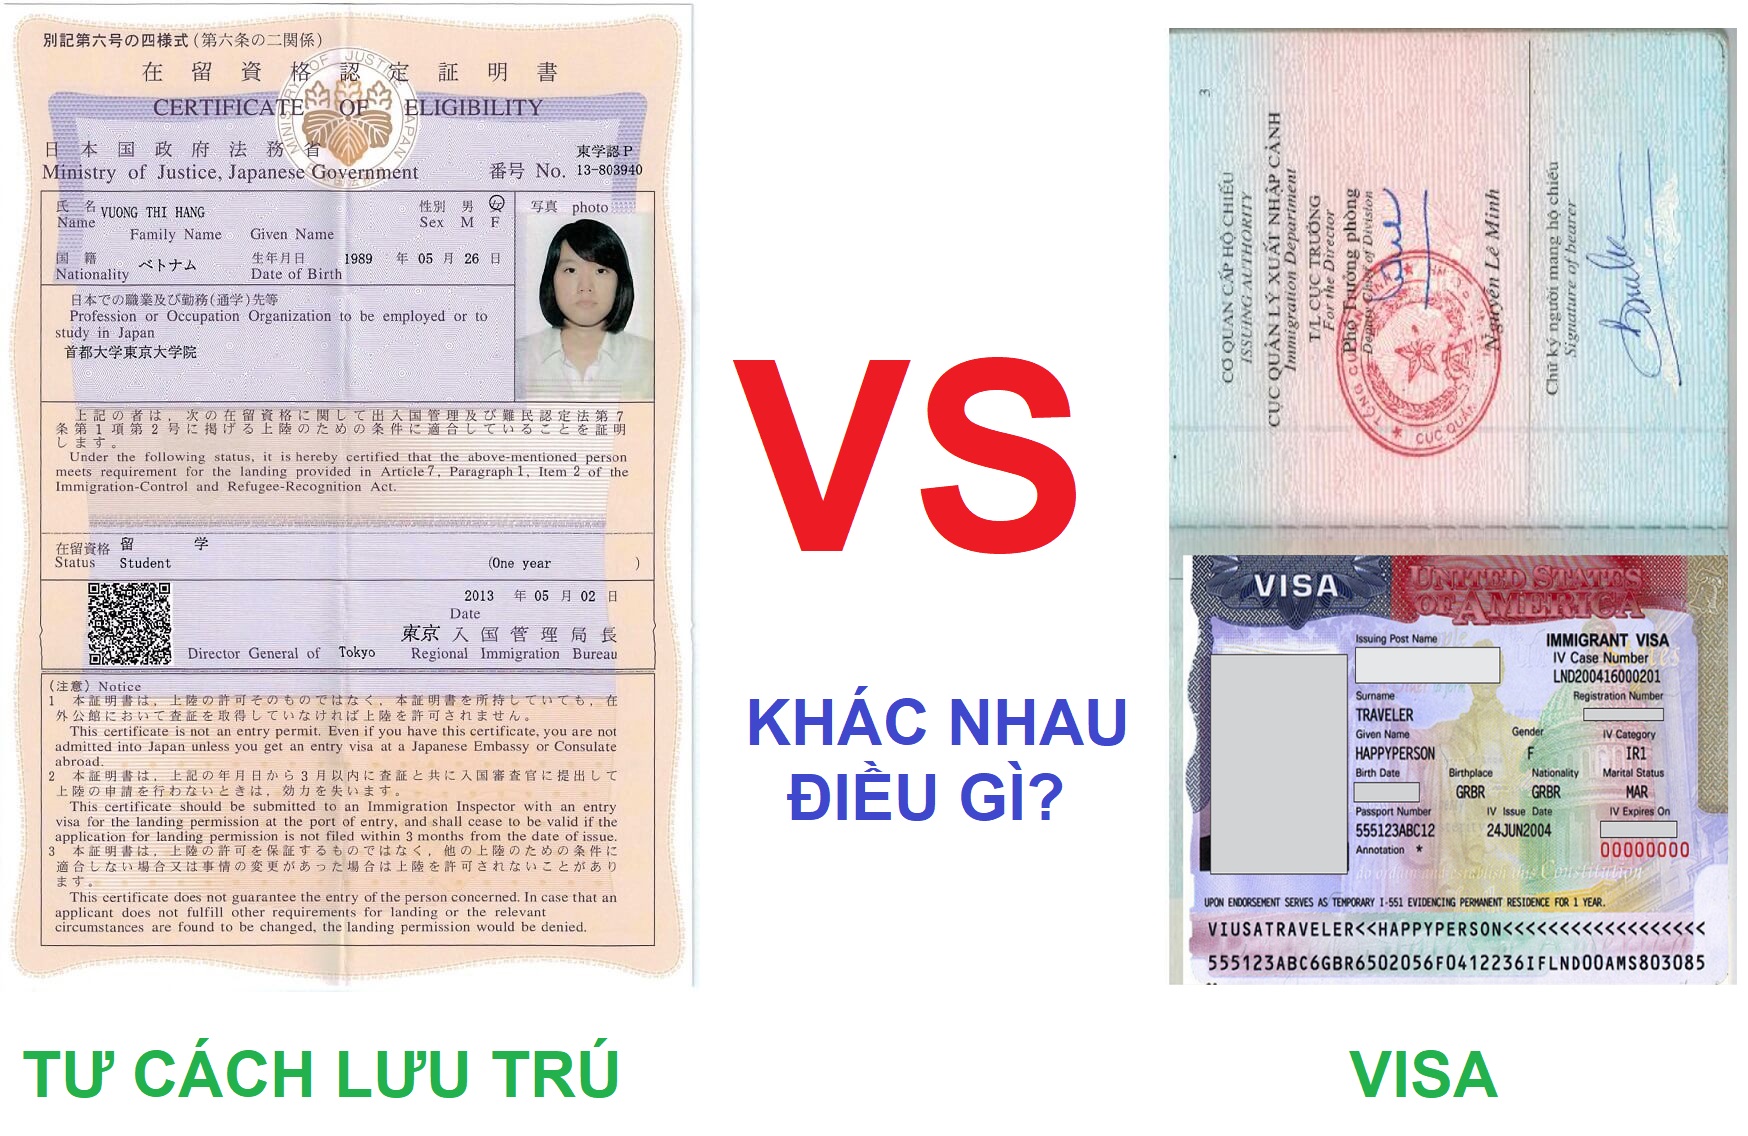 Phân loại sự khách nhau giữa lưu trú và visa